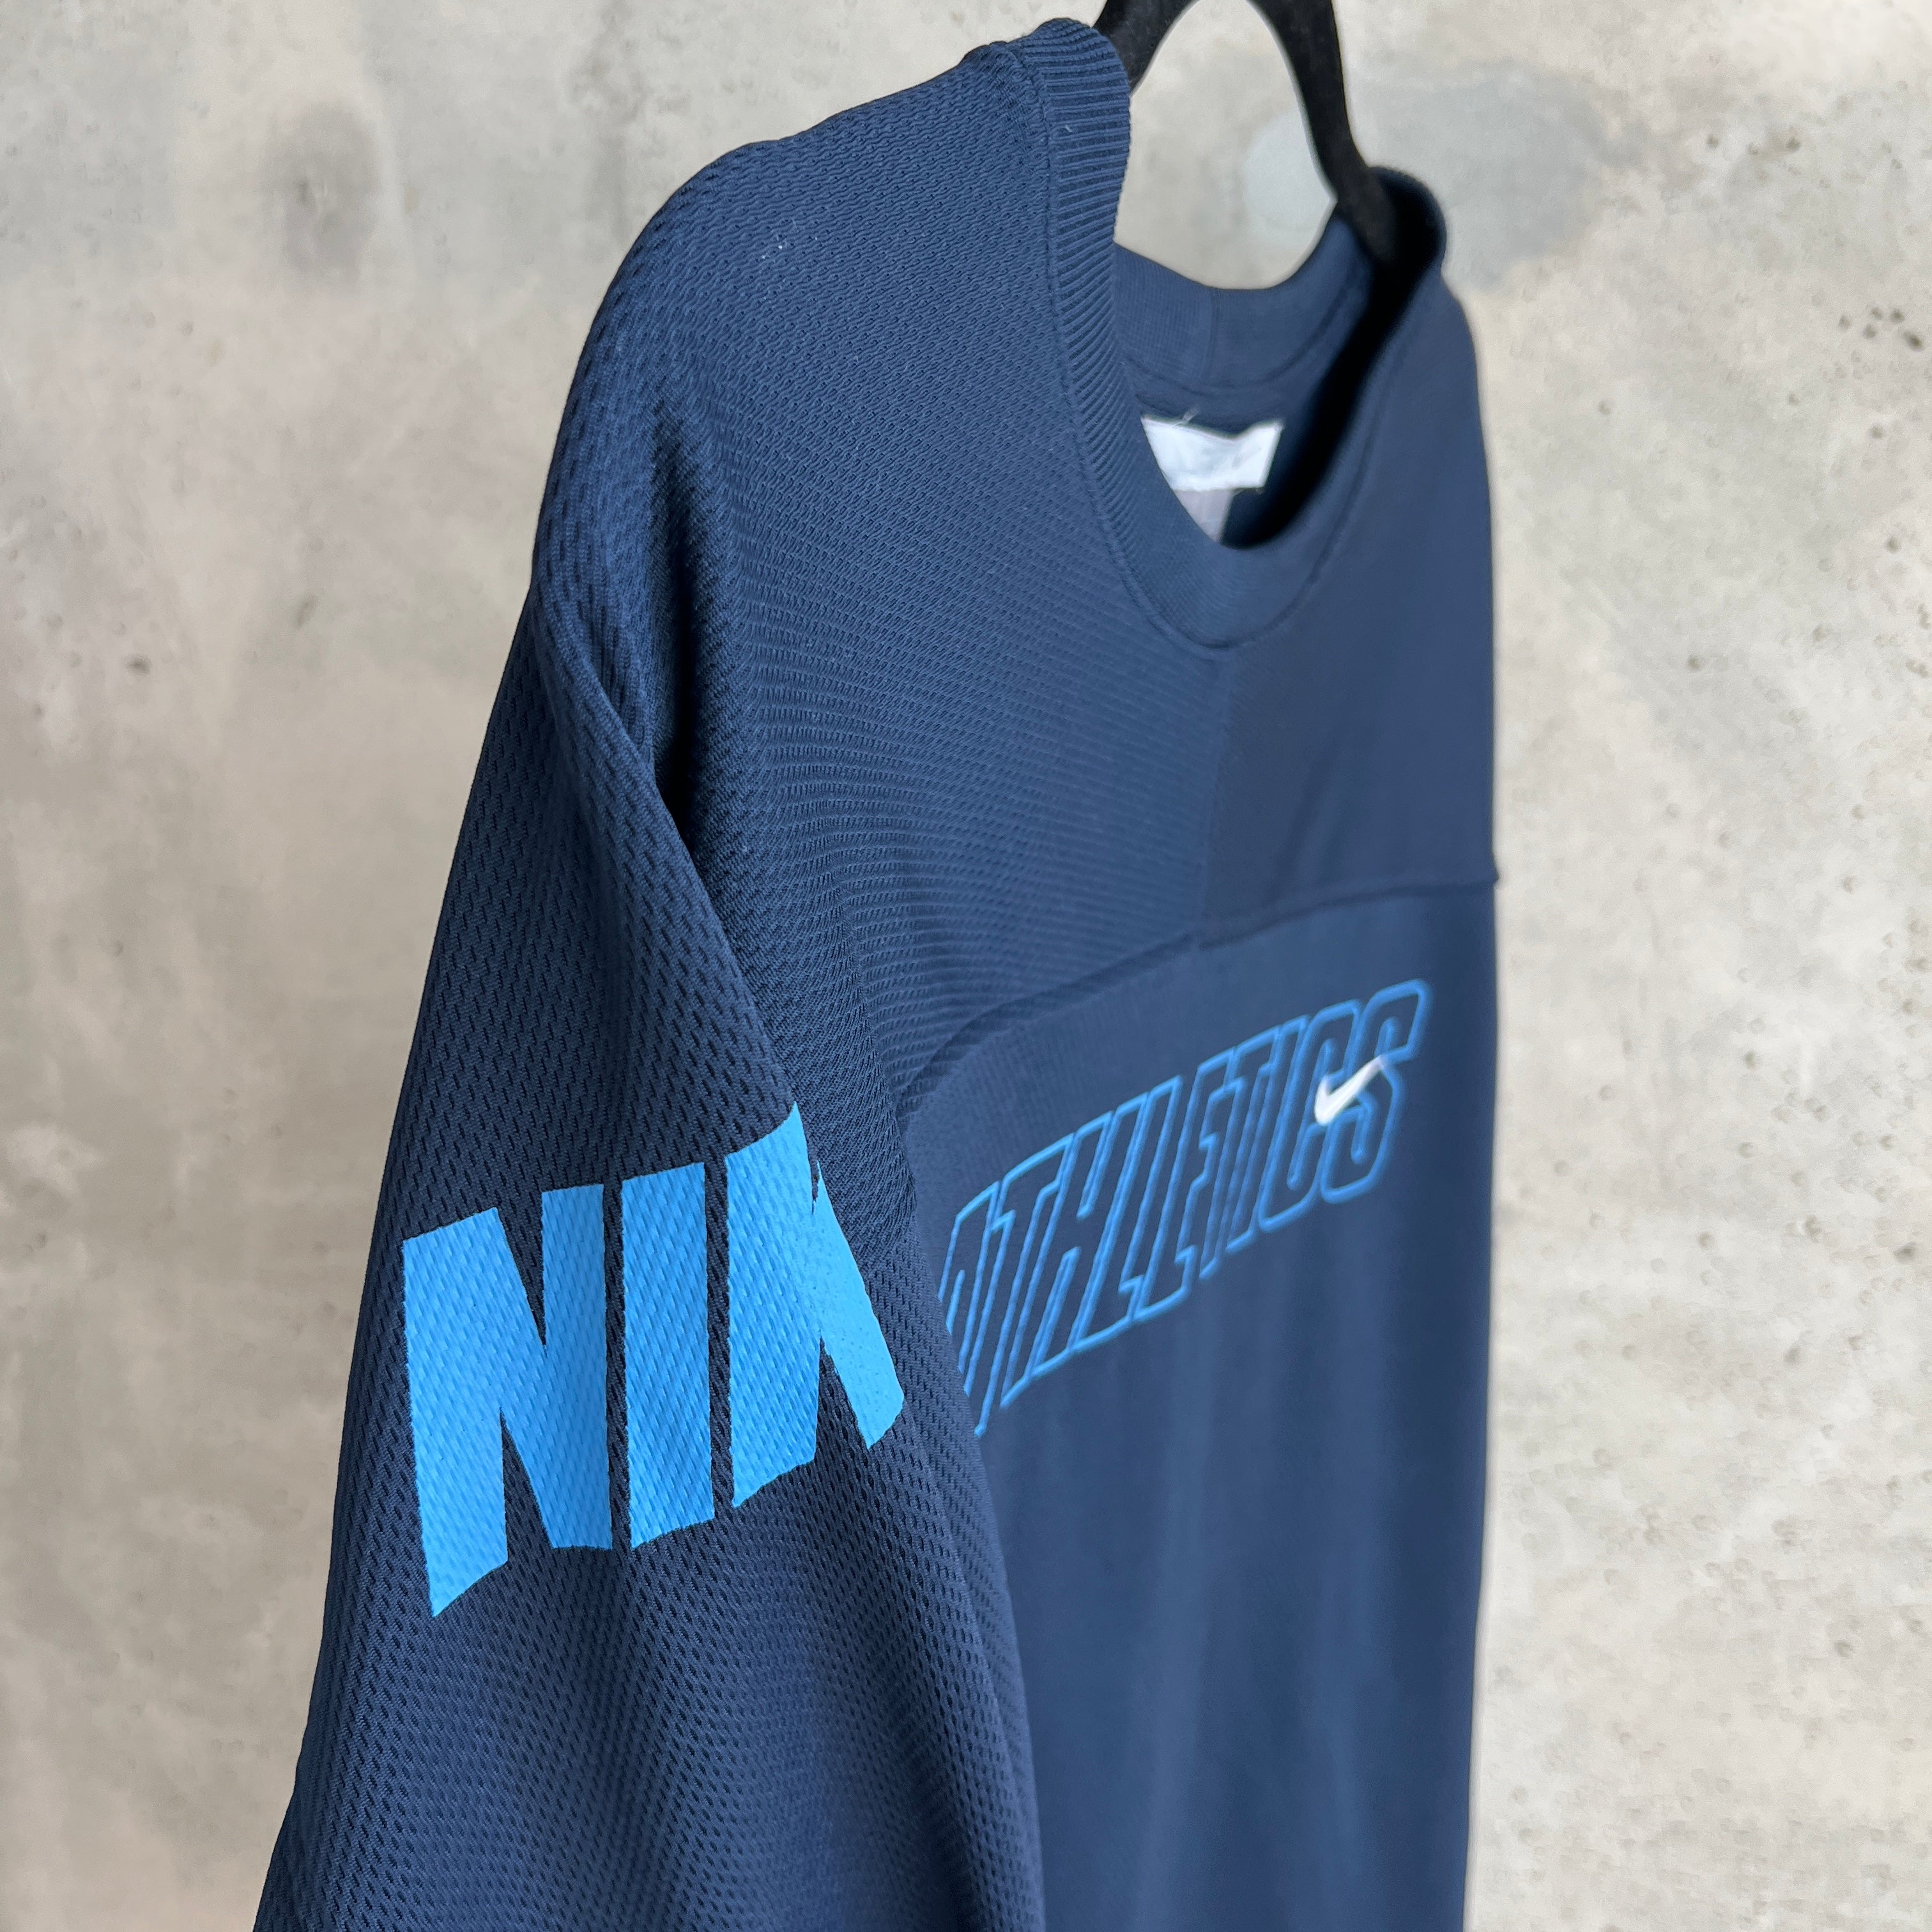 Vintage Nike Longsleeve Jersey